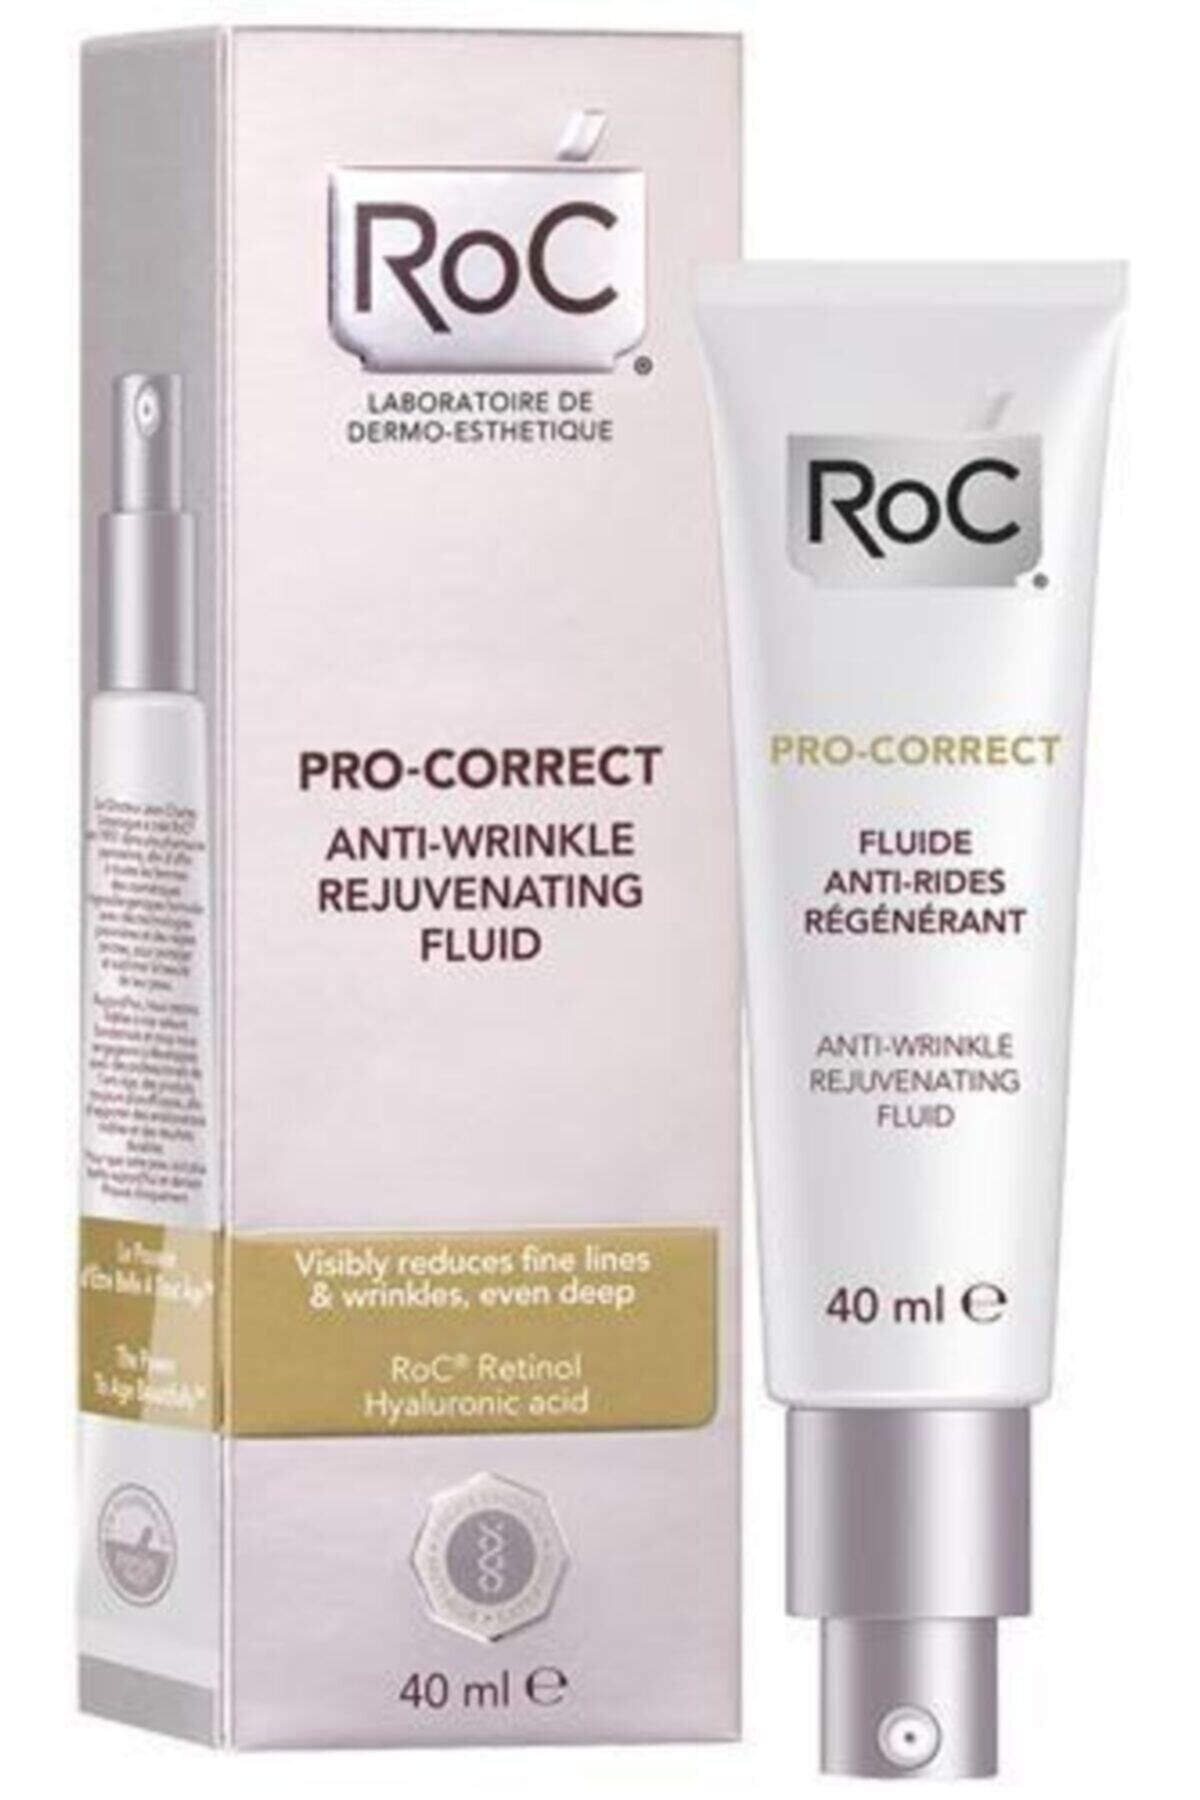 Roc Pro-correct Anti-wrinkle Kırışık Karşıtı Likit Krem 40 ml